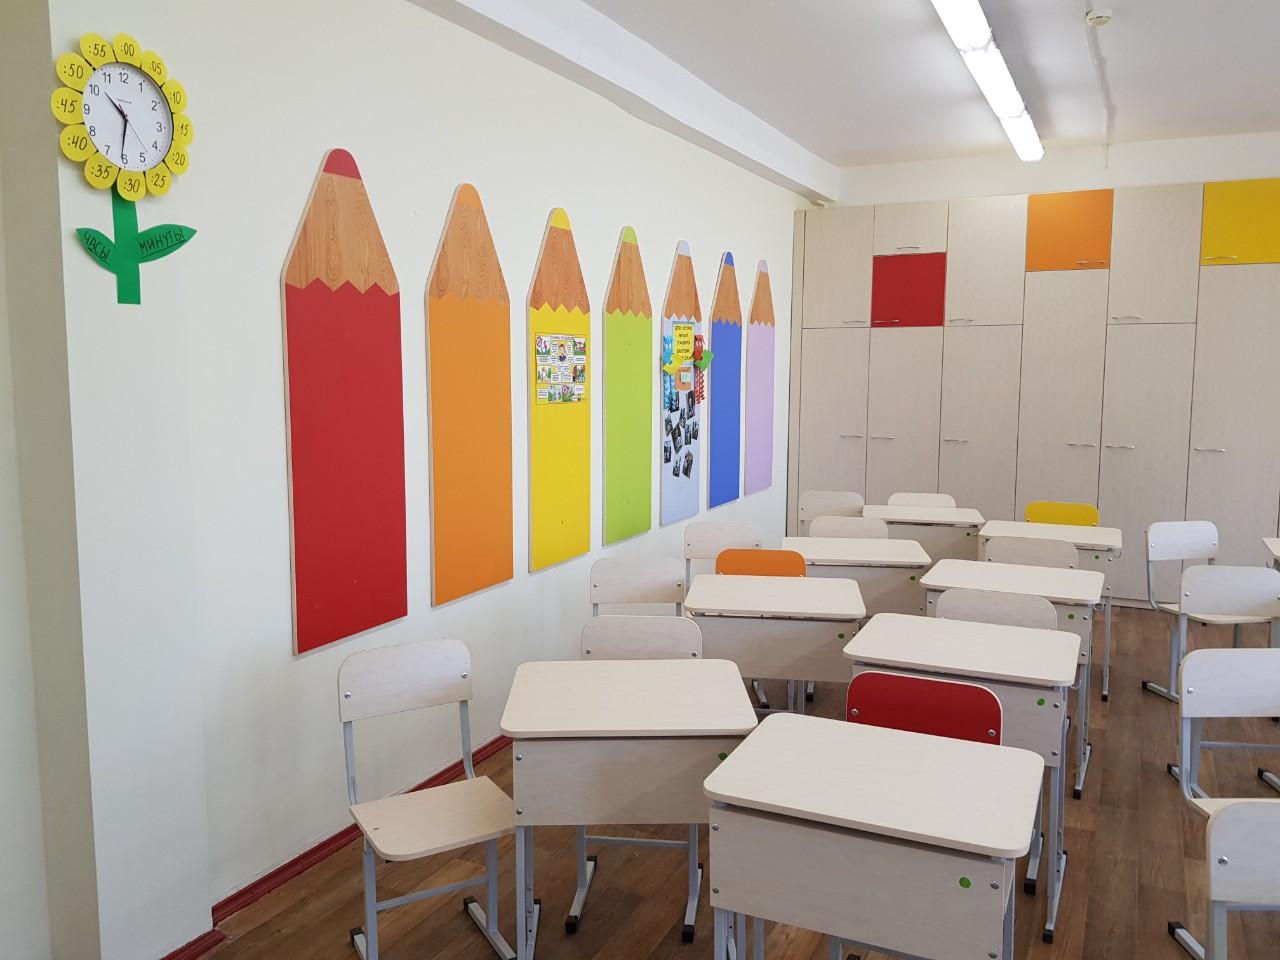 Come decorare le pareti delle aule scolastiche?